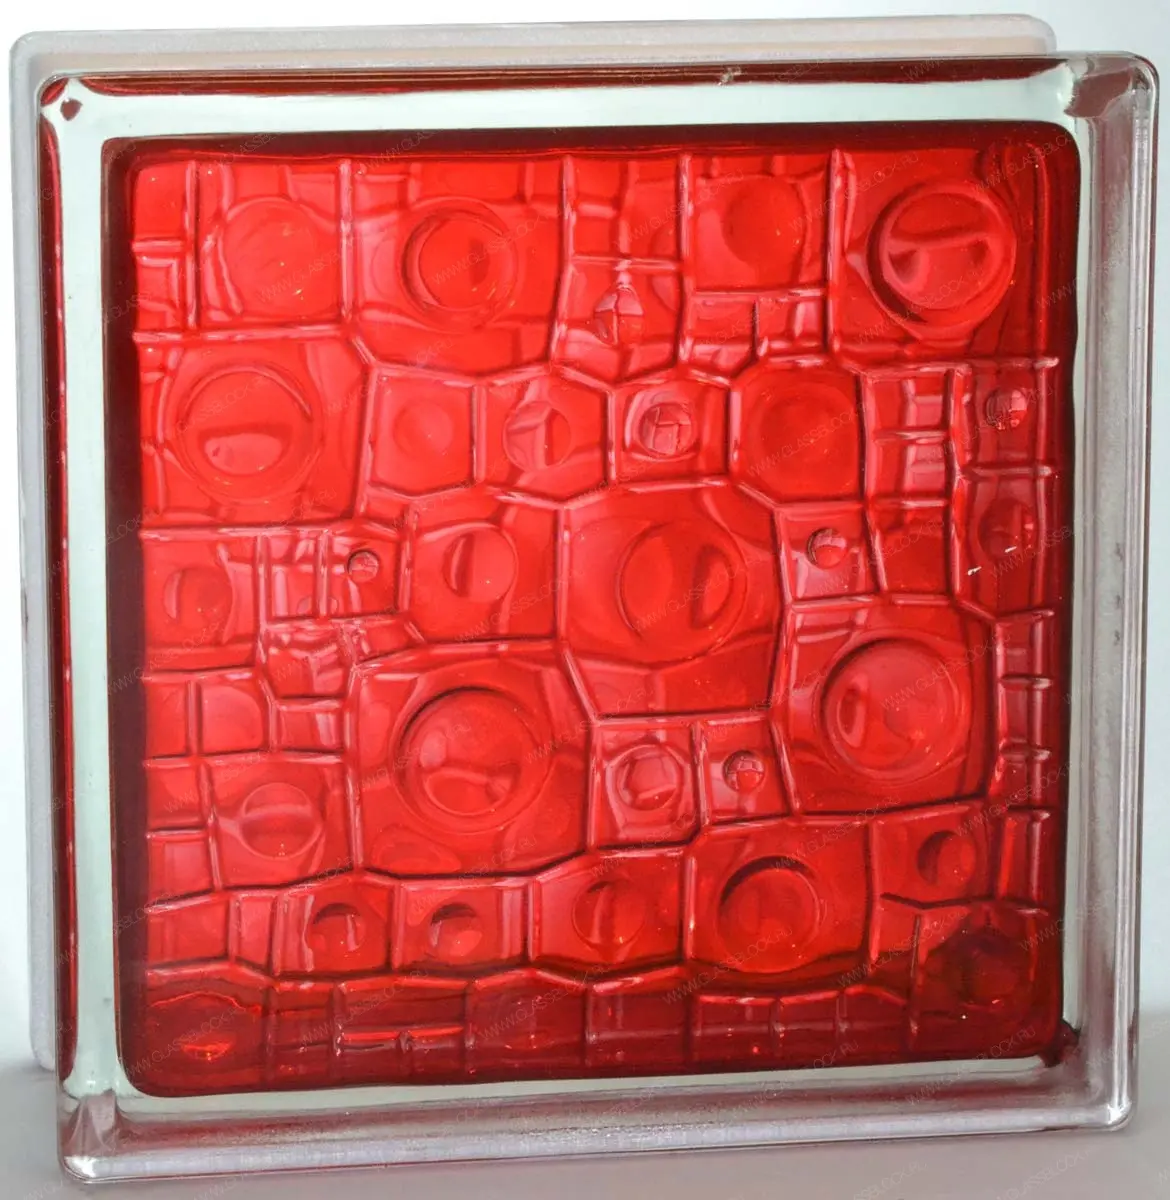 Стеклоблок Губка рубиновый 190*190*80 Glass Block